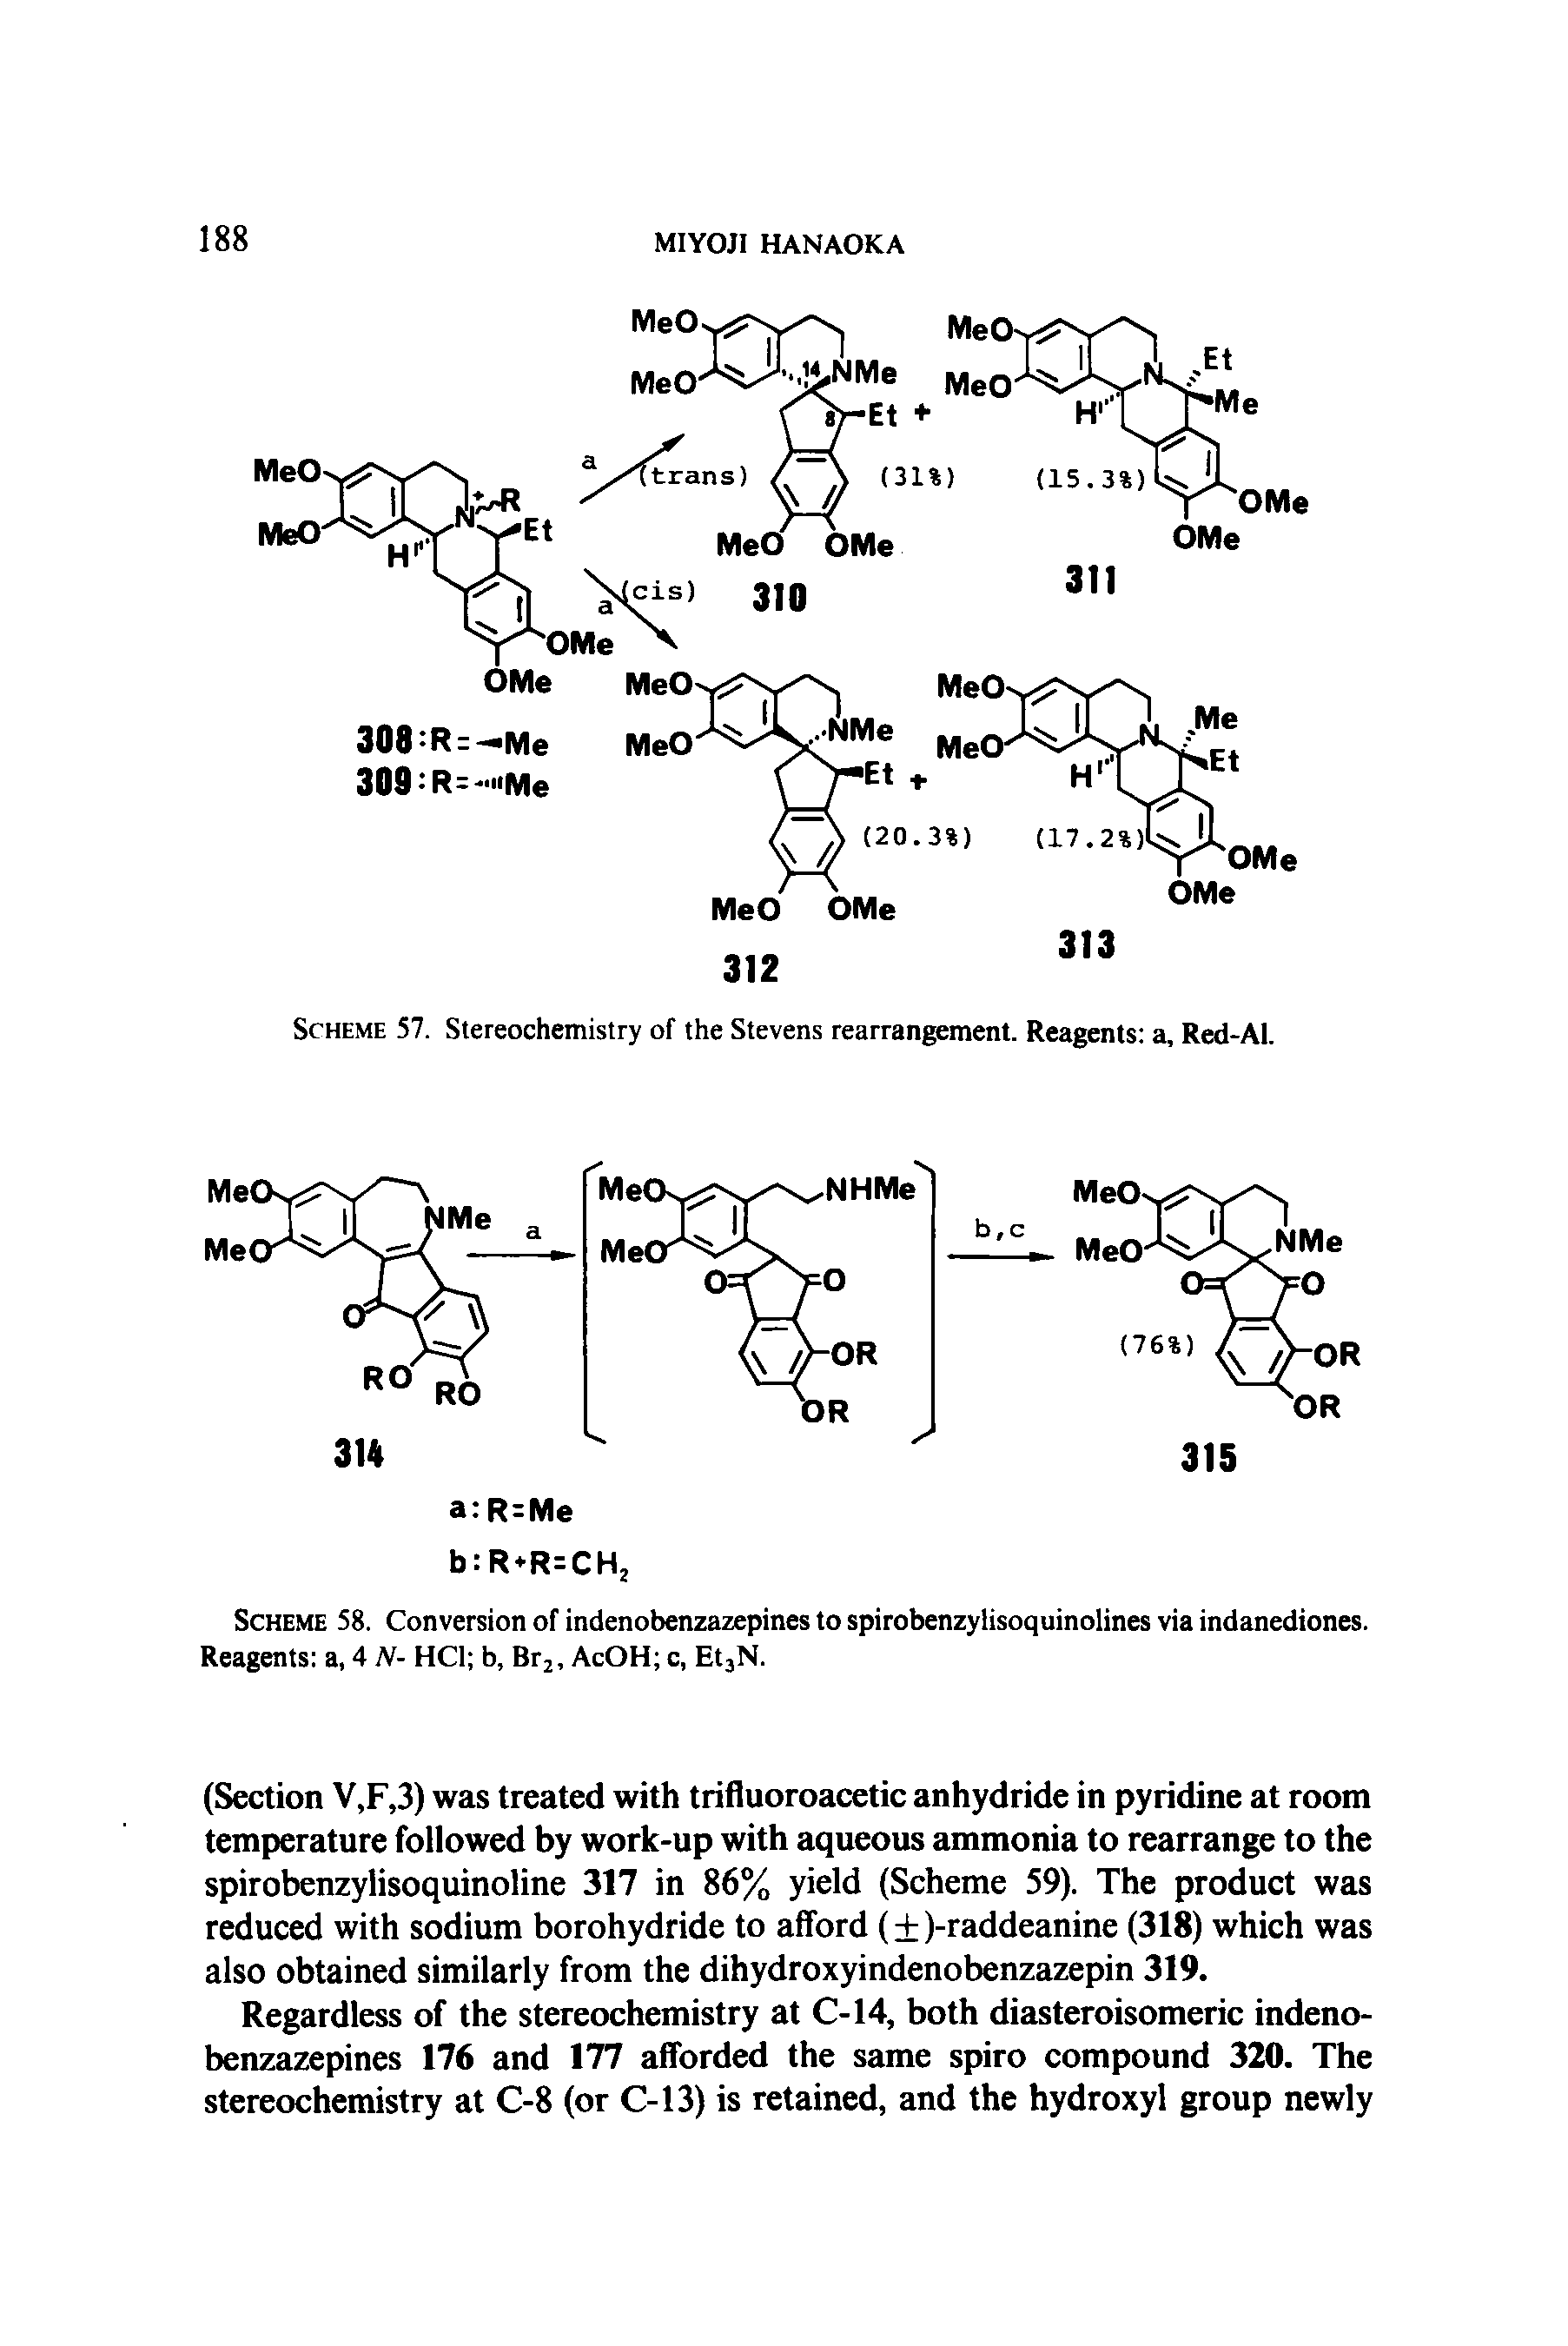 Scheme 58. Conversion of indenobenzazepines to spirobenzytisoquinolines via indanediones. Reagents a, 4 N- HC1 b, Br2, AcOH c, Et3N.